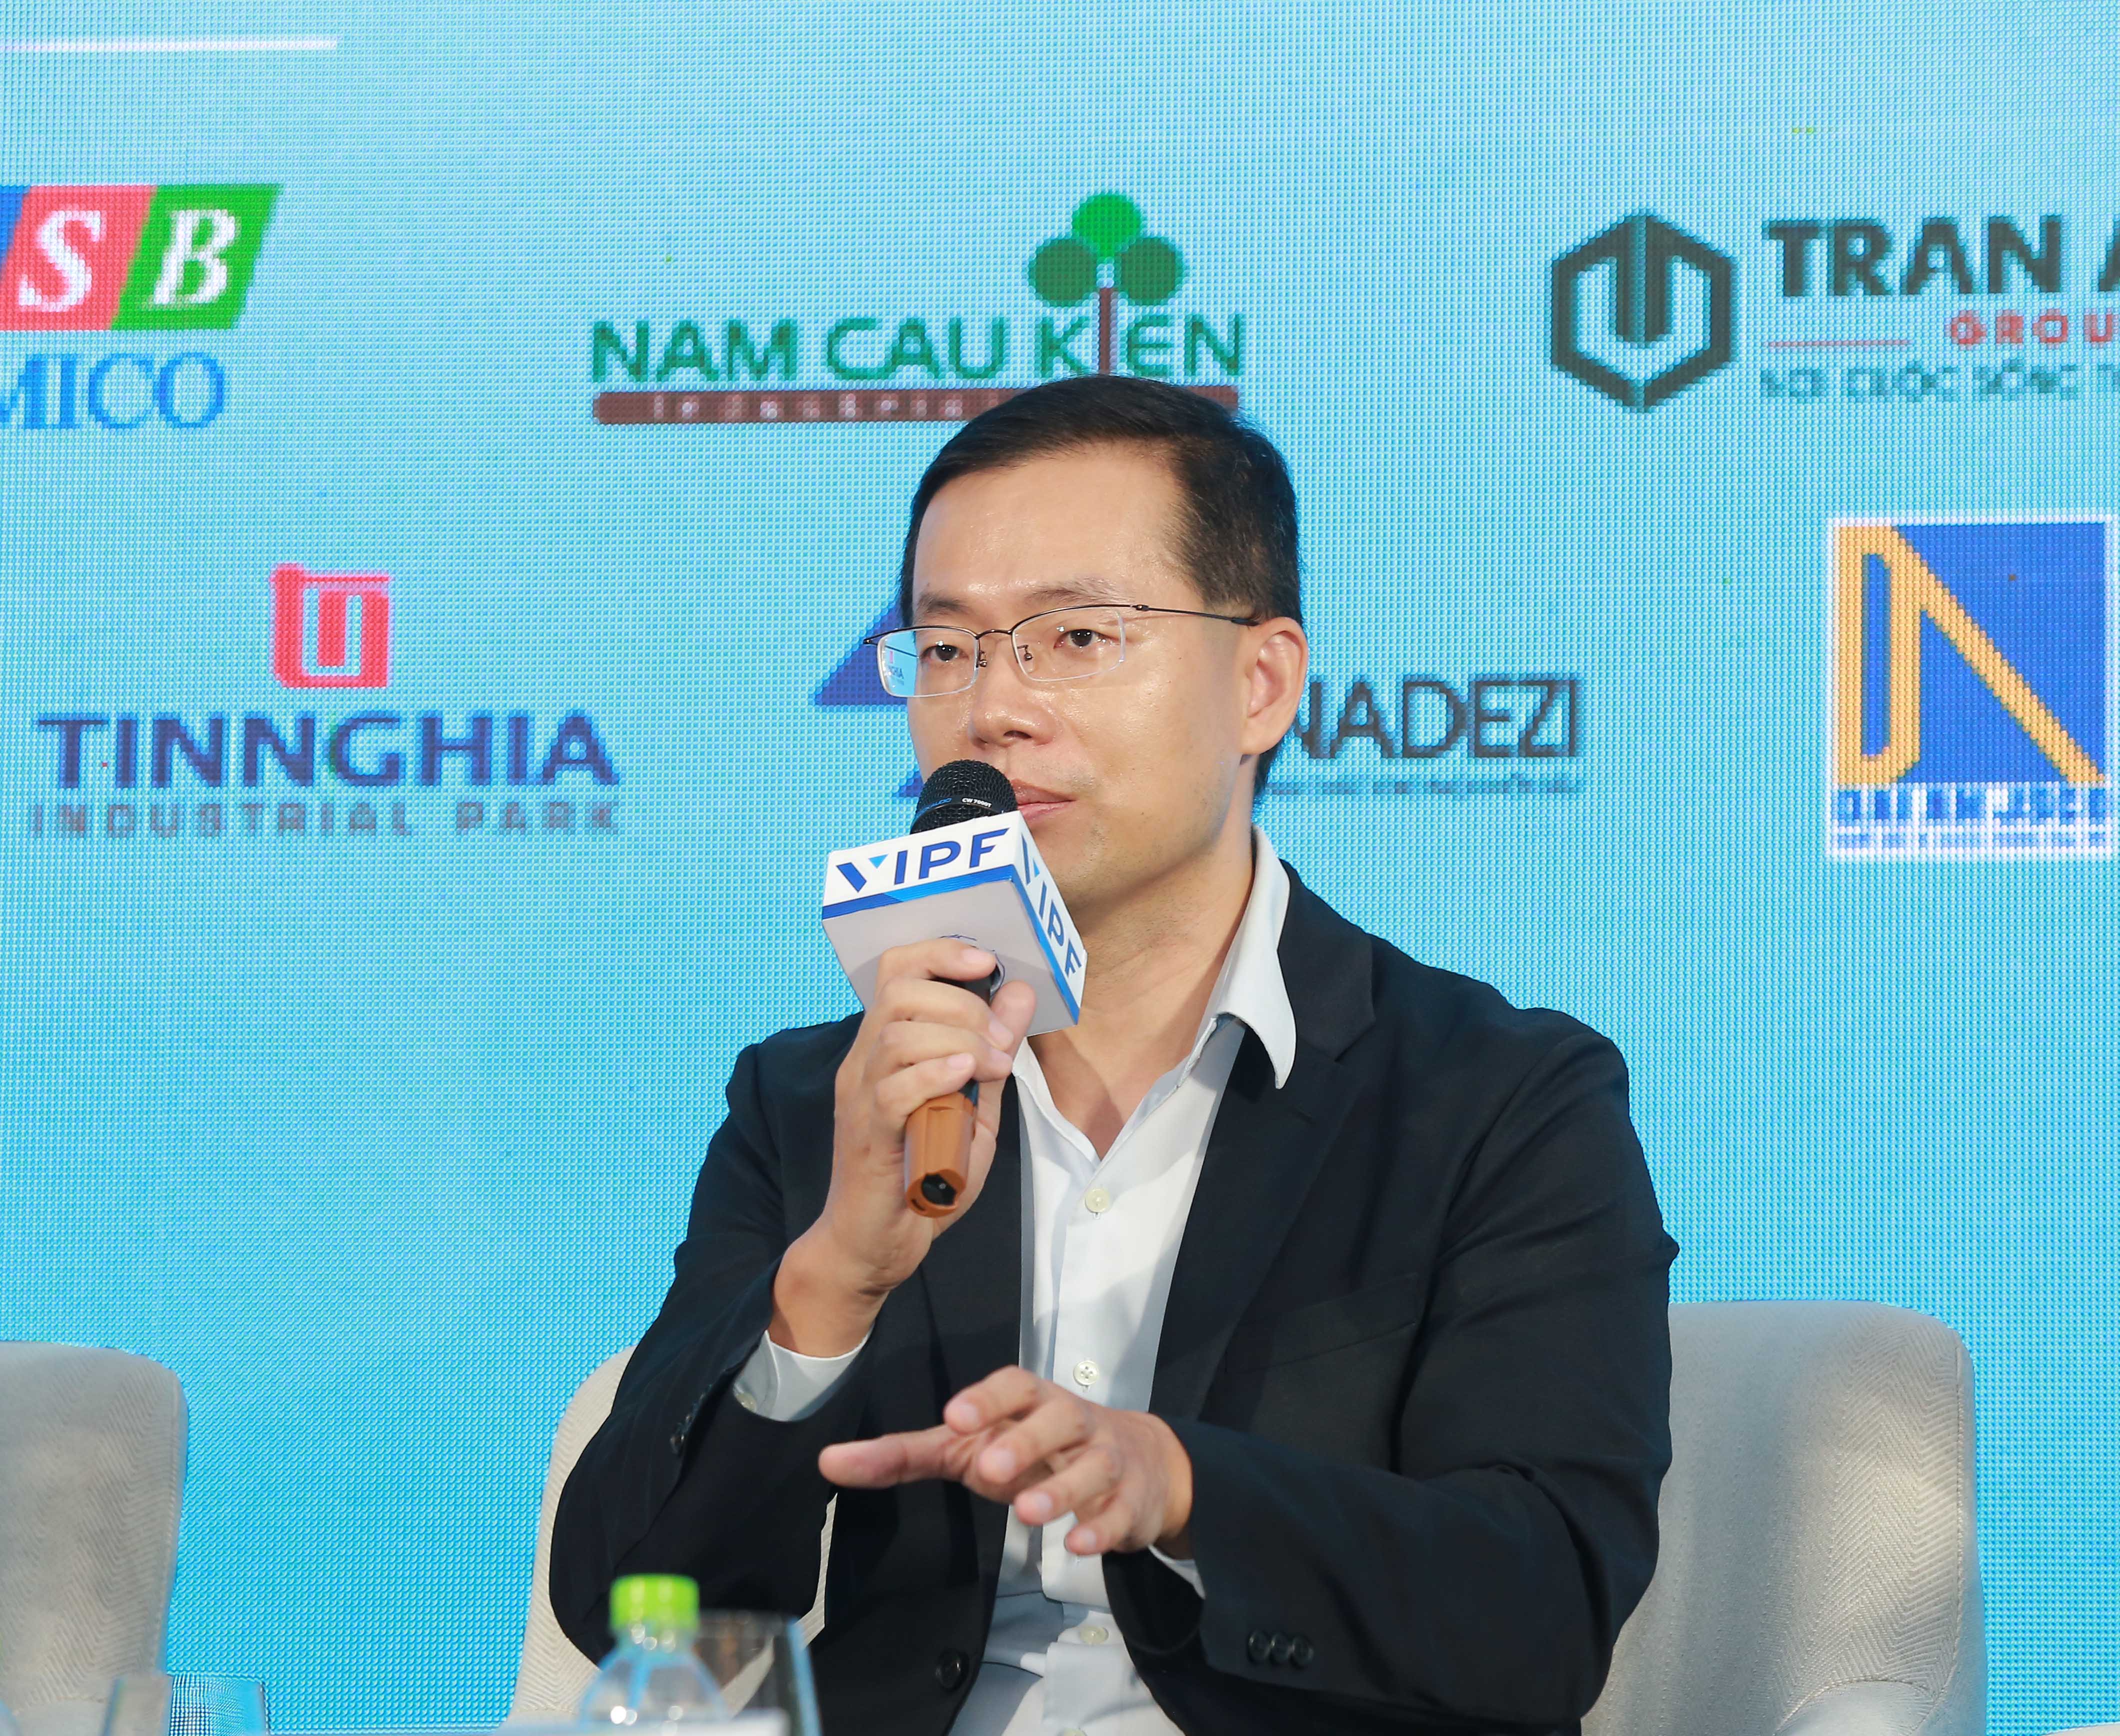 Ông Nelson Wu, Tổng giám đốc BEST Inc Vietnam: Khi nói về Việt Nam điều chúng tôi nhận ra là chưa có nguồn cung cho logistics thương mại điện tử, đại đa số các nhà kho bãi vẫn đang đi theo phương án truyền thống. Tuy nhiên, hiện tại một số thương hiệu đang muốn đầu tư vào hệ sinh thái thương mại điện tử của riêng họ và thương mại điện tử vẫn còn nhiều cơ hội cho nhiều “người chơi”. 